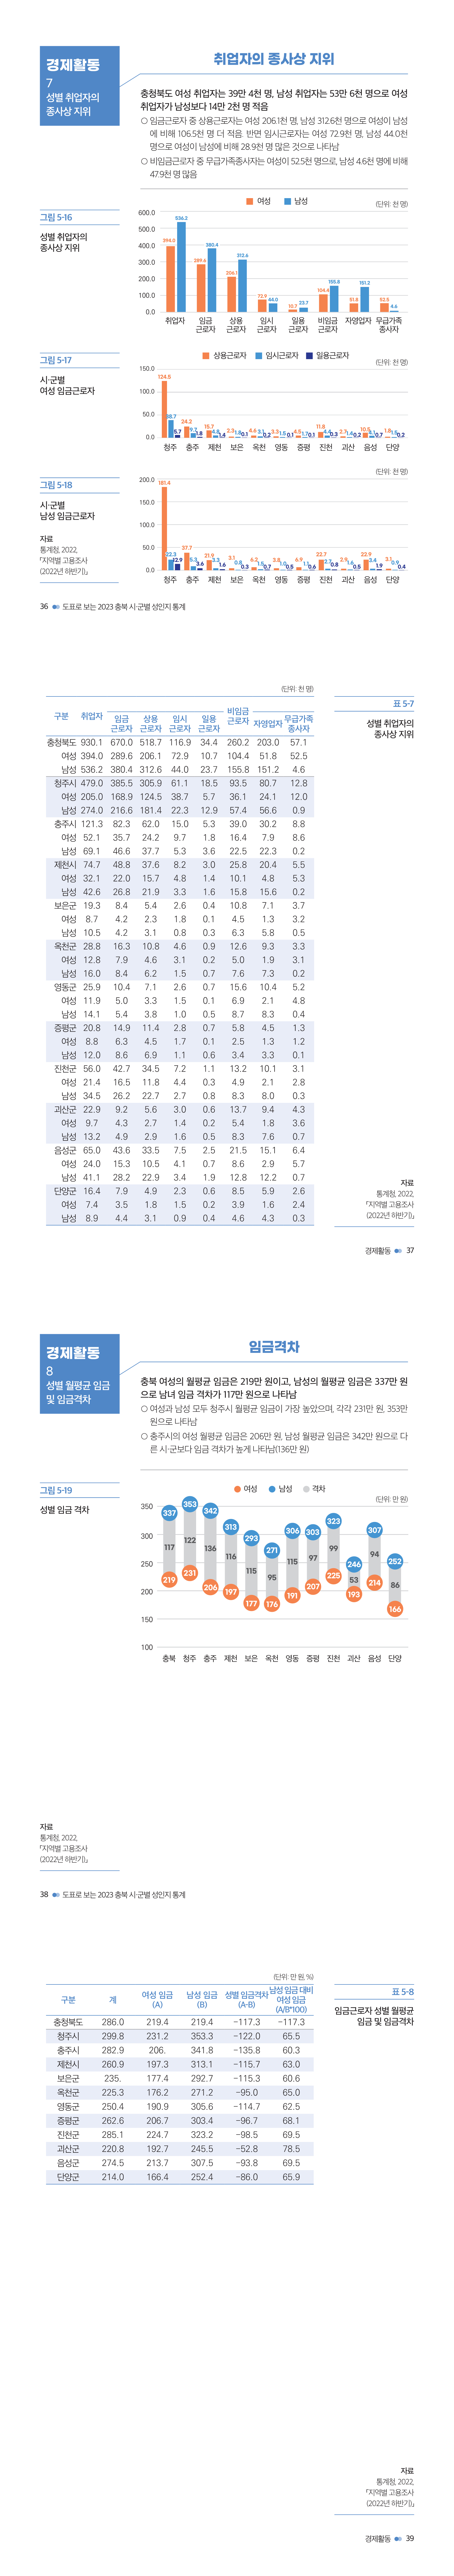 충북여성재단-성인지통계(인포)_웹용_경제4.jpg